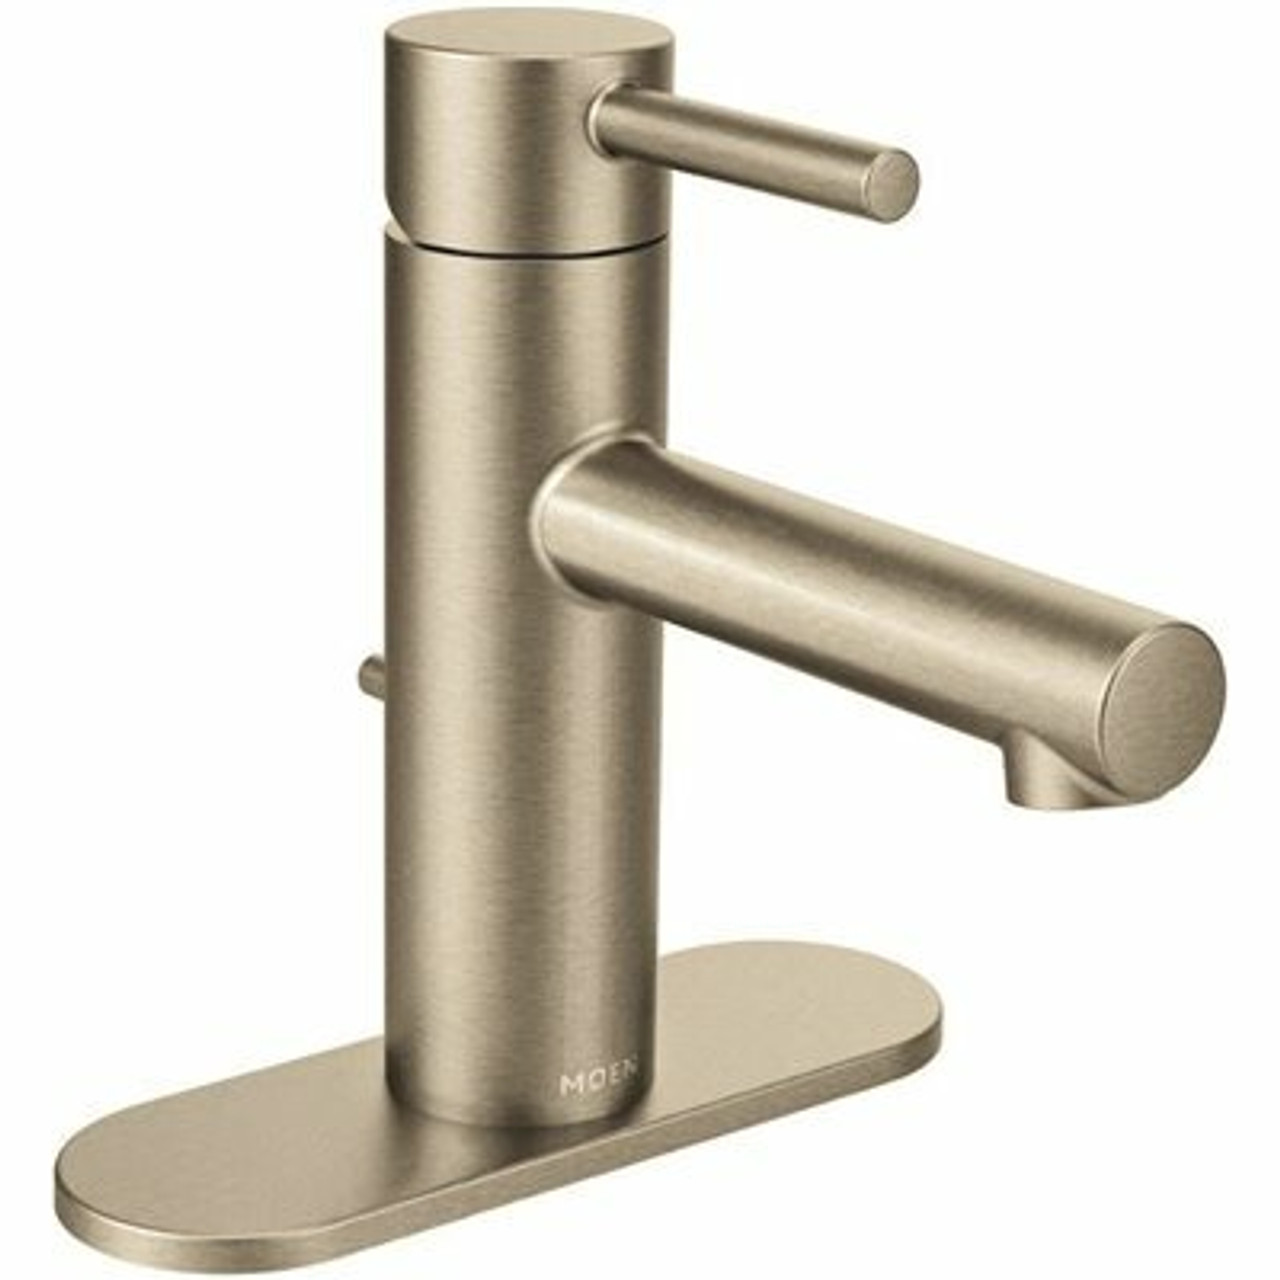 Moen Align Single Hole Single-Handle Bathroom Faucet In Brushed Nickel